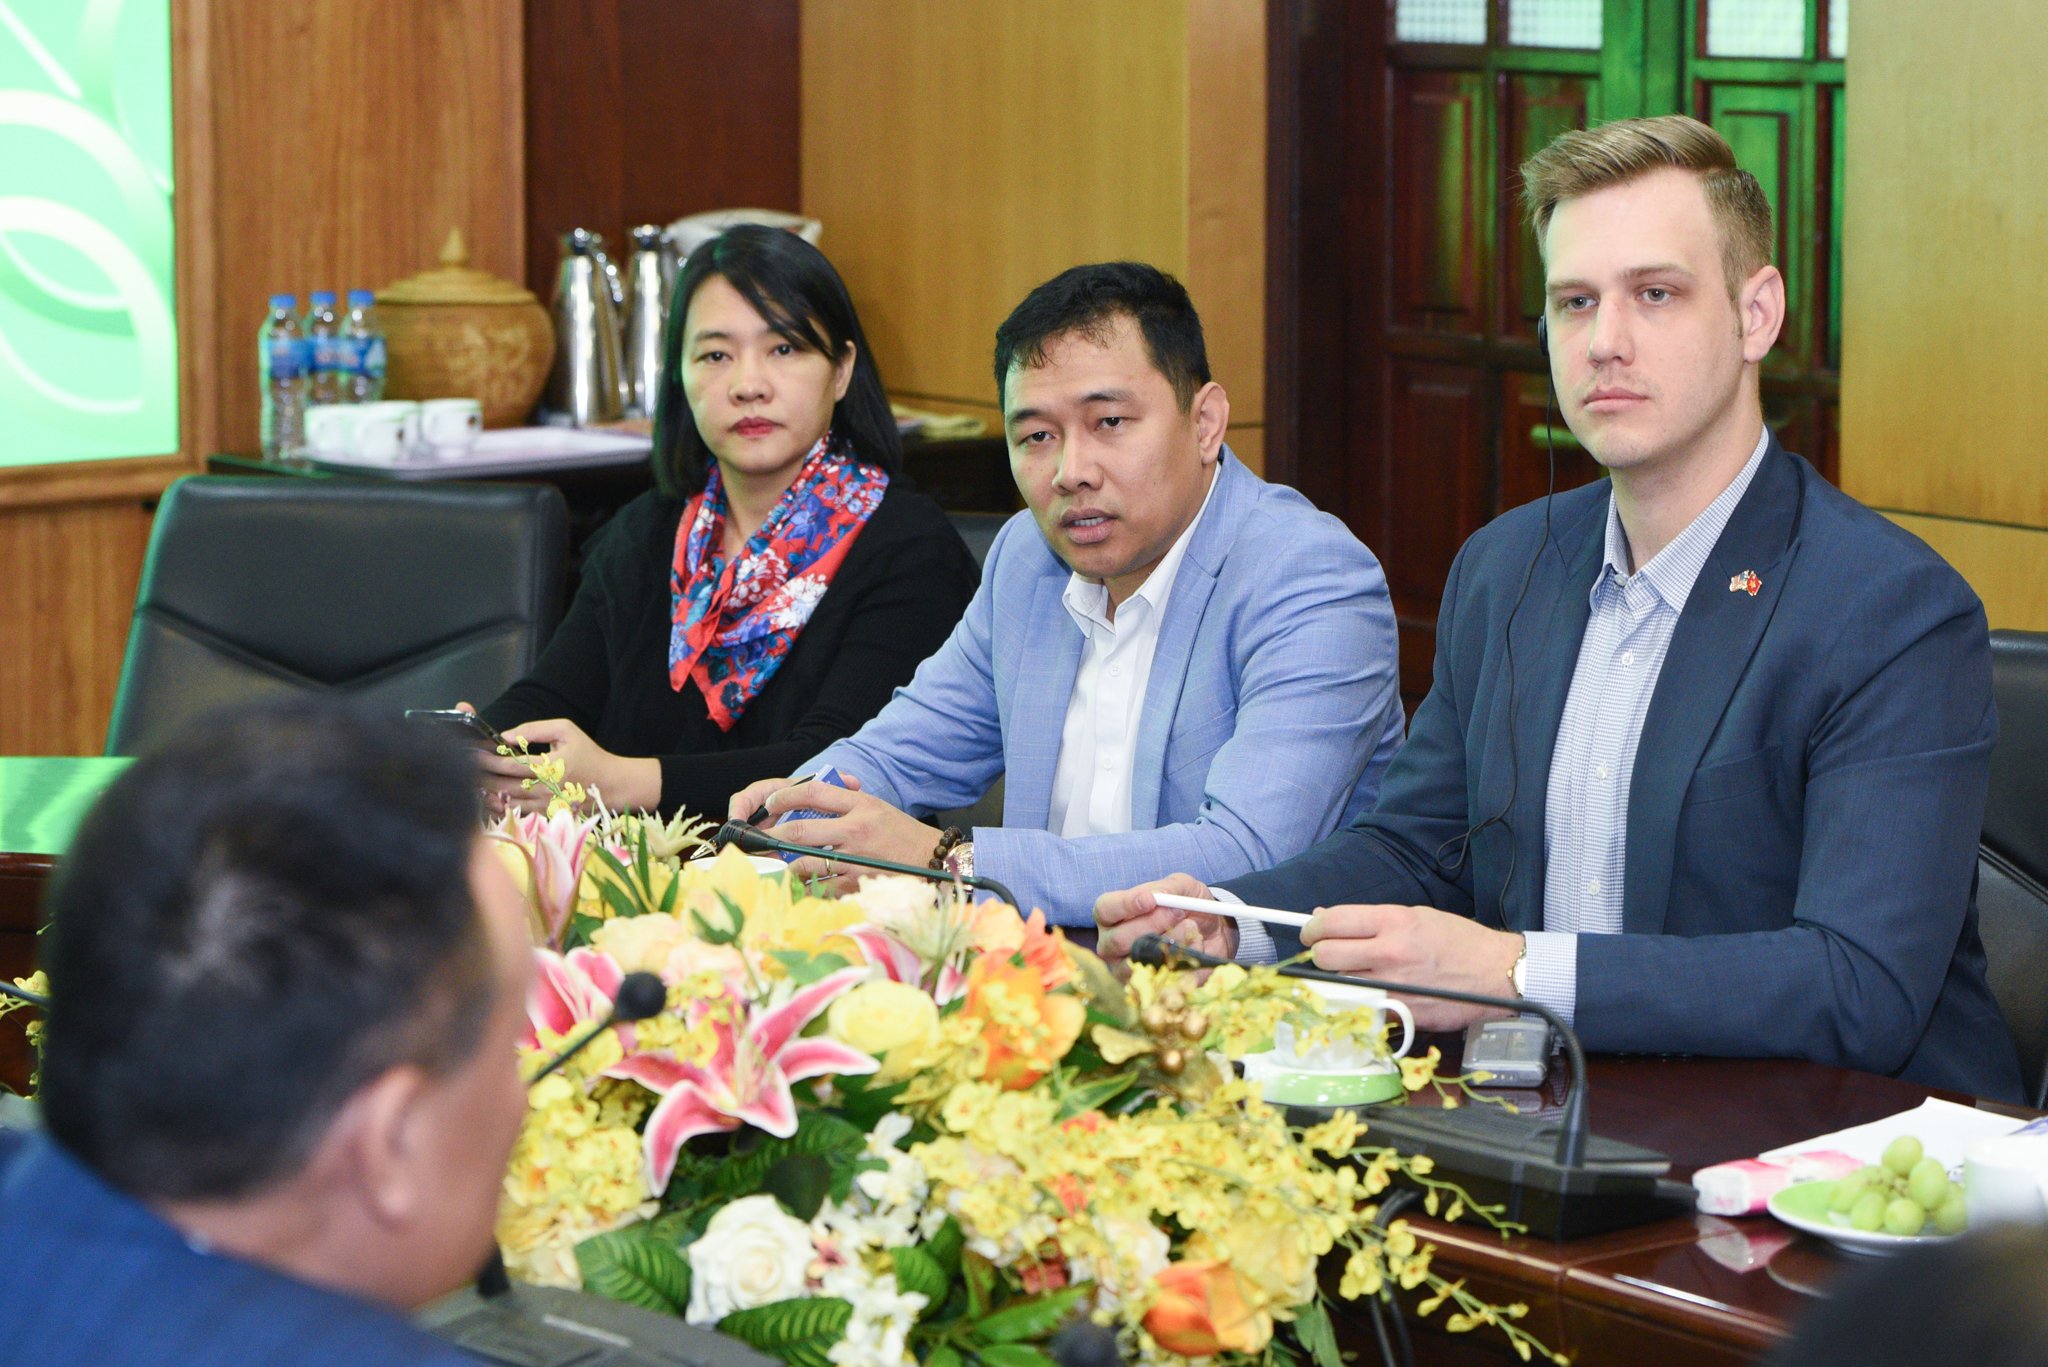 Ông Trần Trọng Nghĩa (giữa), đại diện Hội đồng Ngũ cốc Hoa Kỳ tại Việt Nam làm việc với Dabaco trong chuyến thăm của 2 Thứ trưởng Bộ Nông nghiệp Hoa Kỳ vừa qua. Ảnh: Tùng Đinh.